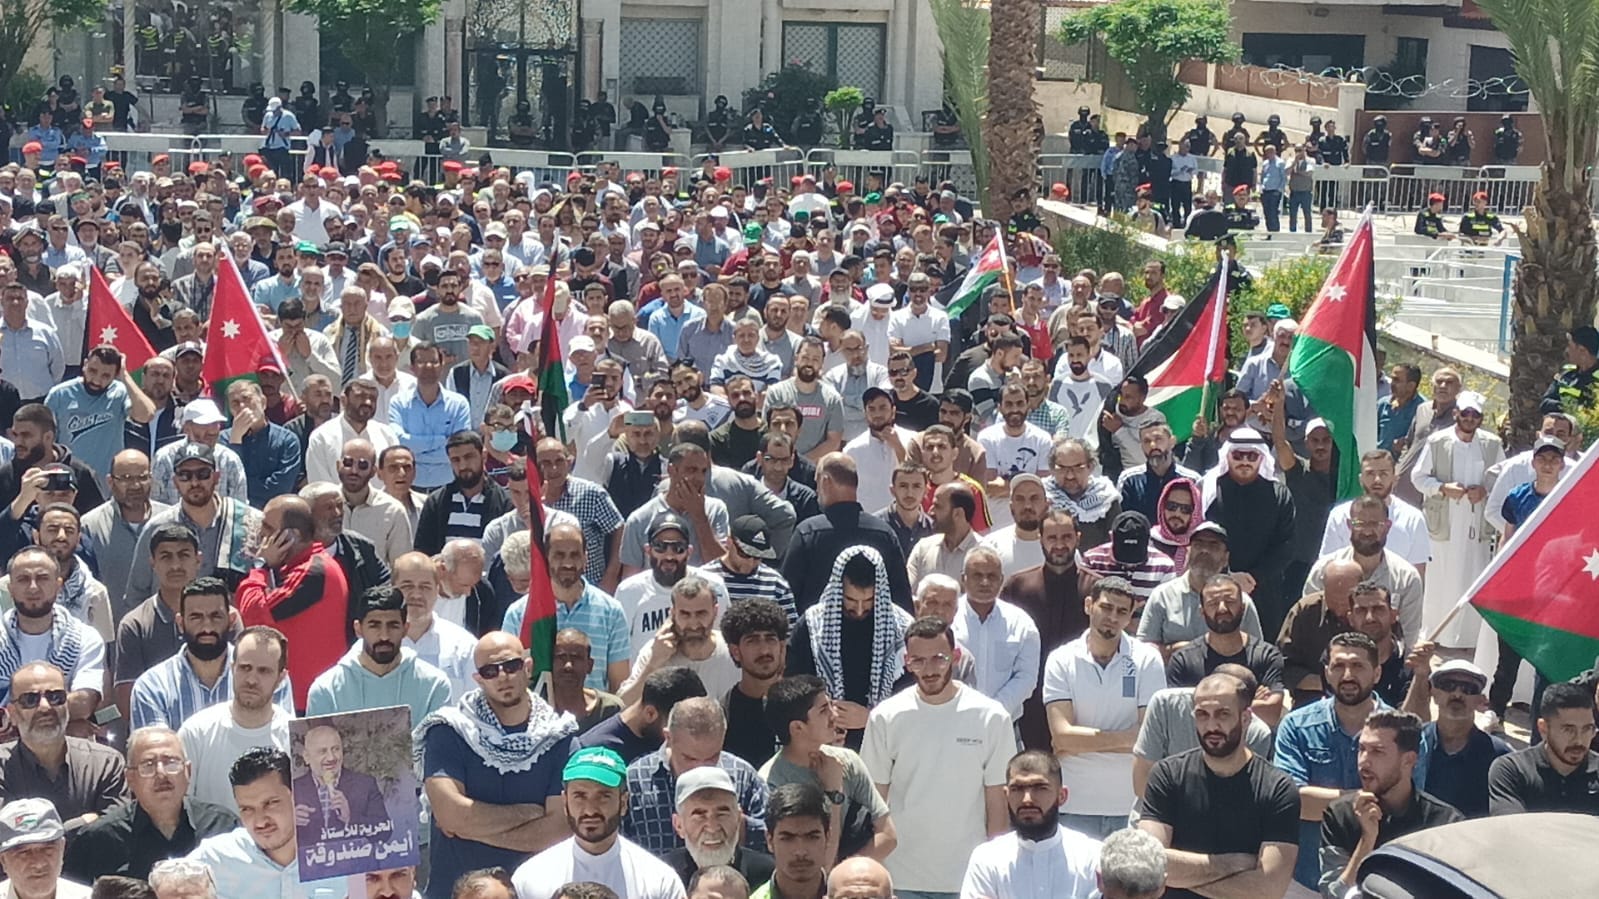 آلاف الاردنيين قرب سفارة الاحتلال دعما للمقاومة.. وللمطالبة بالافراج عن المعتقلين - فيديو وصور